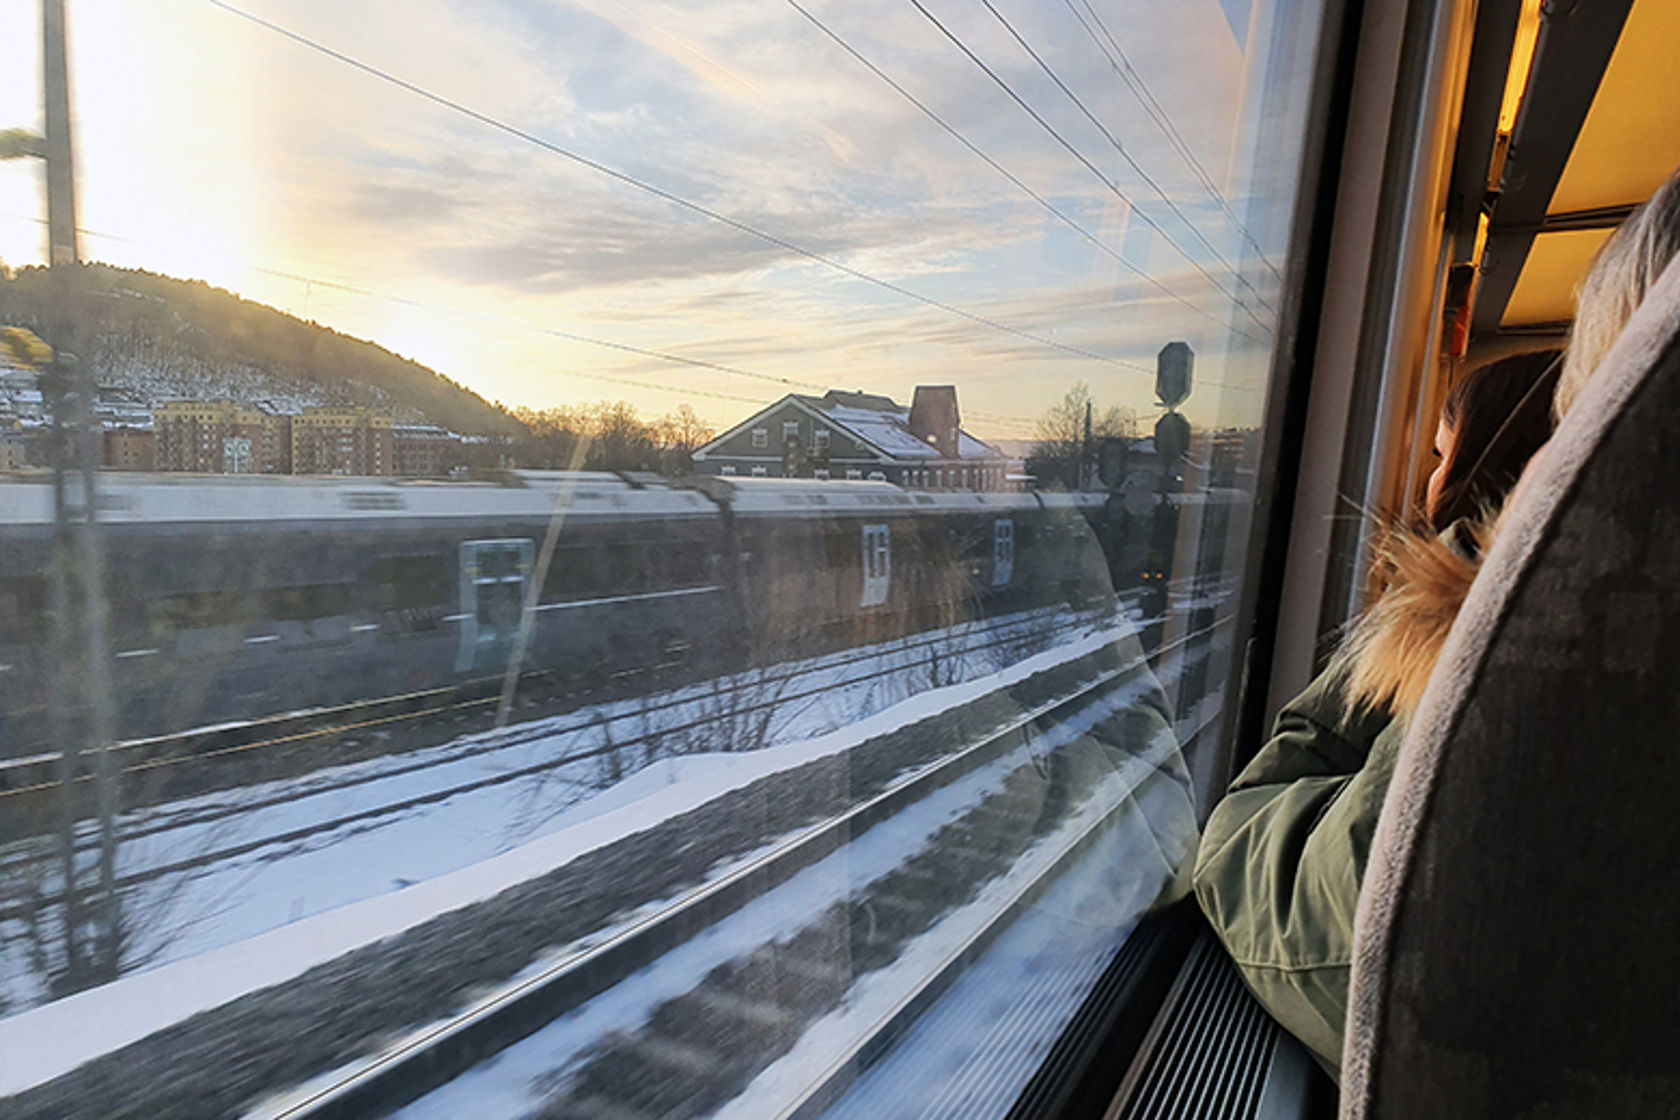 Bilde innenfra et tog der en passasjer sitter med armen støttet mot vindusruta.